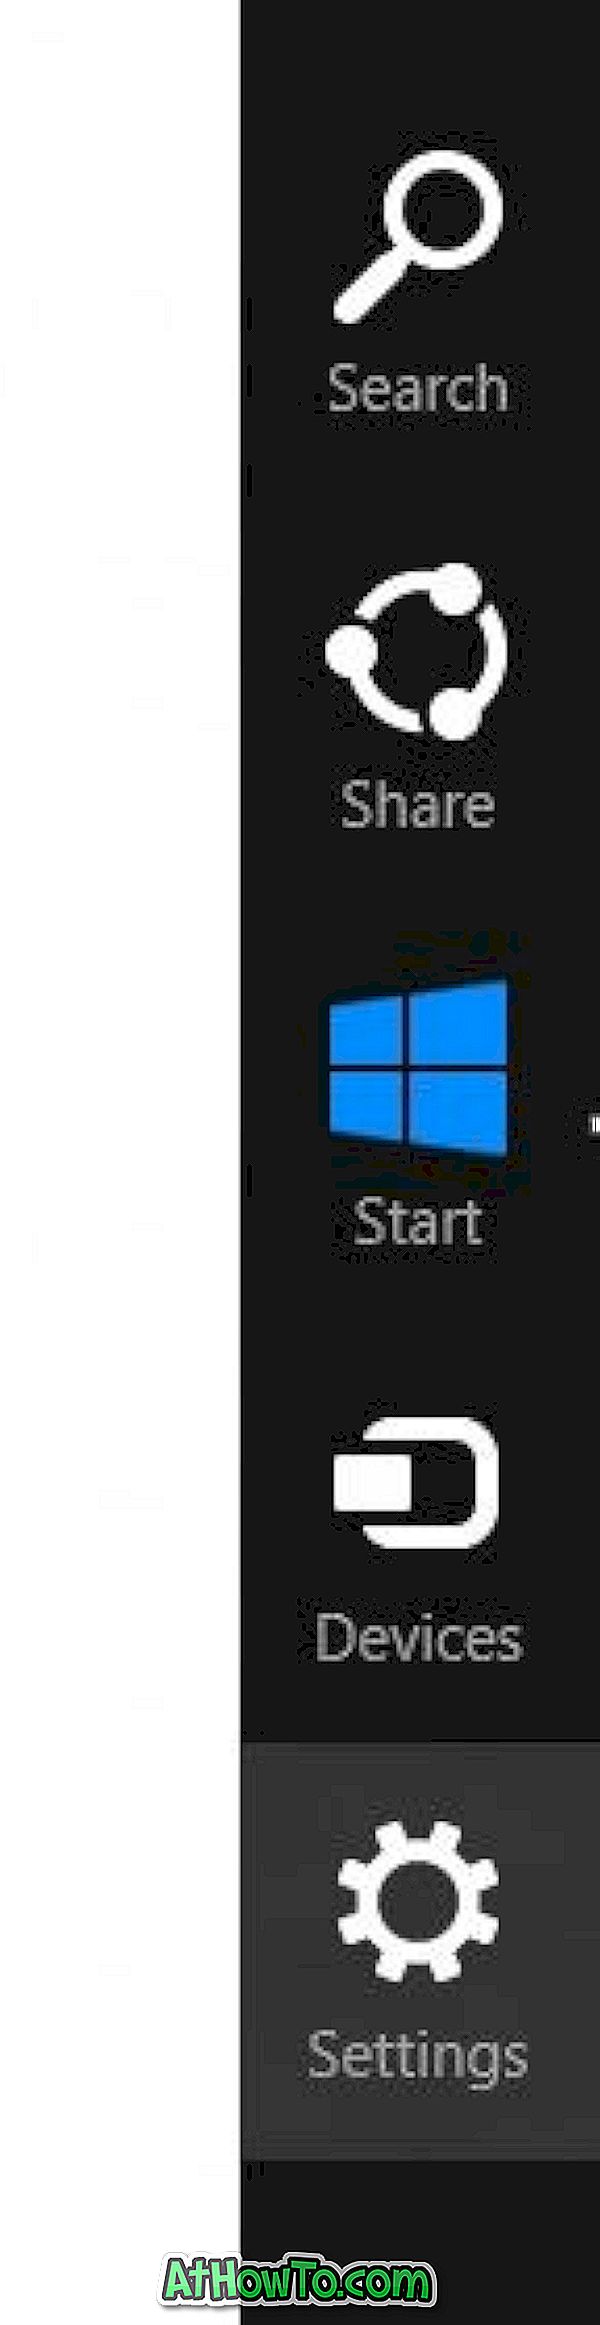 Kā izmantot atsvaidzināšanas datora funkciju operētājsistēmā Windows 8